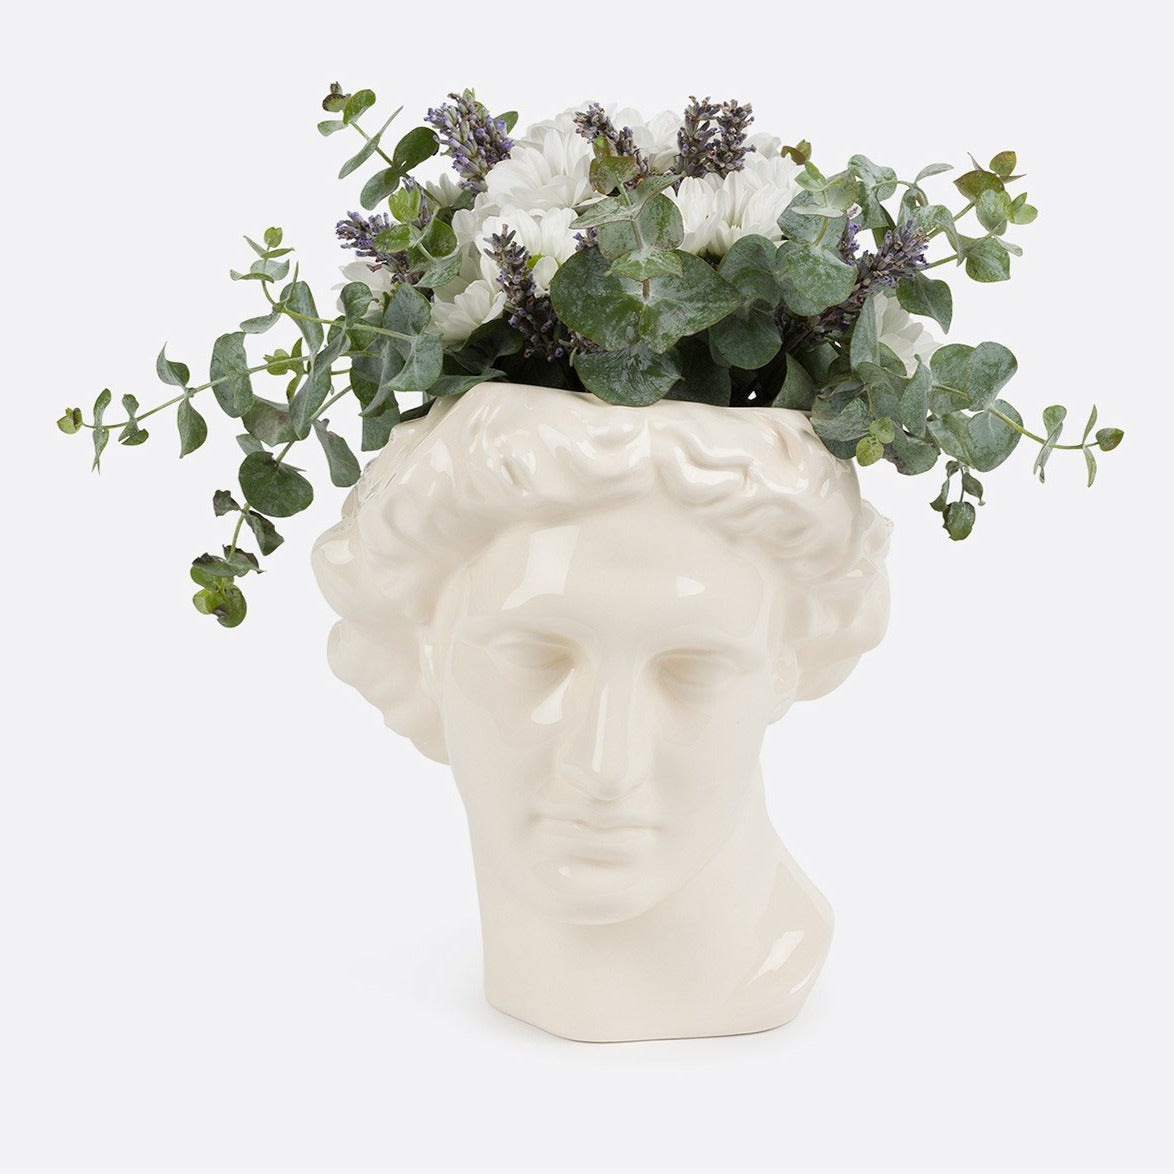 DOIY Apollo Vase